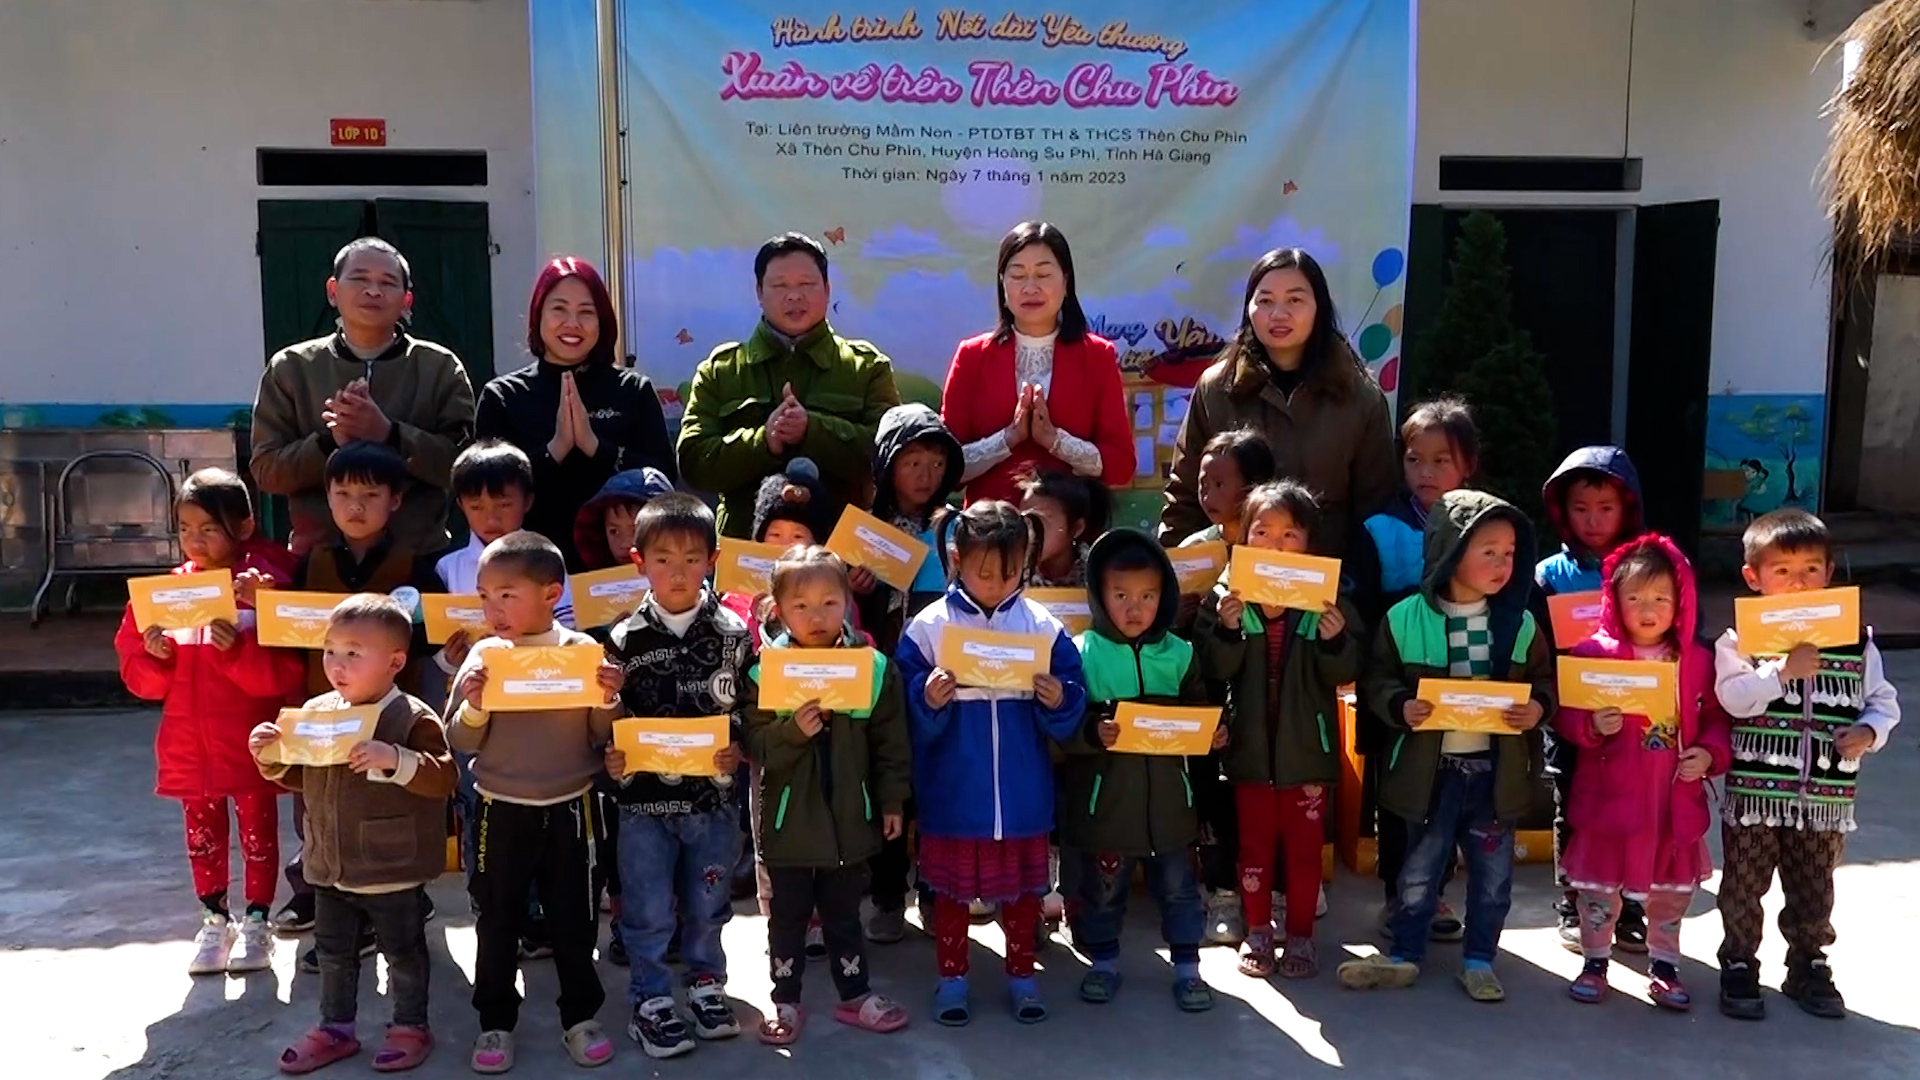 Hơn 100 suất quà đã được Công ty vntrip trao tặng các em học sinh xã Thèn Chu Phìn.